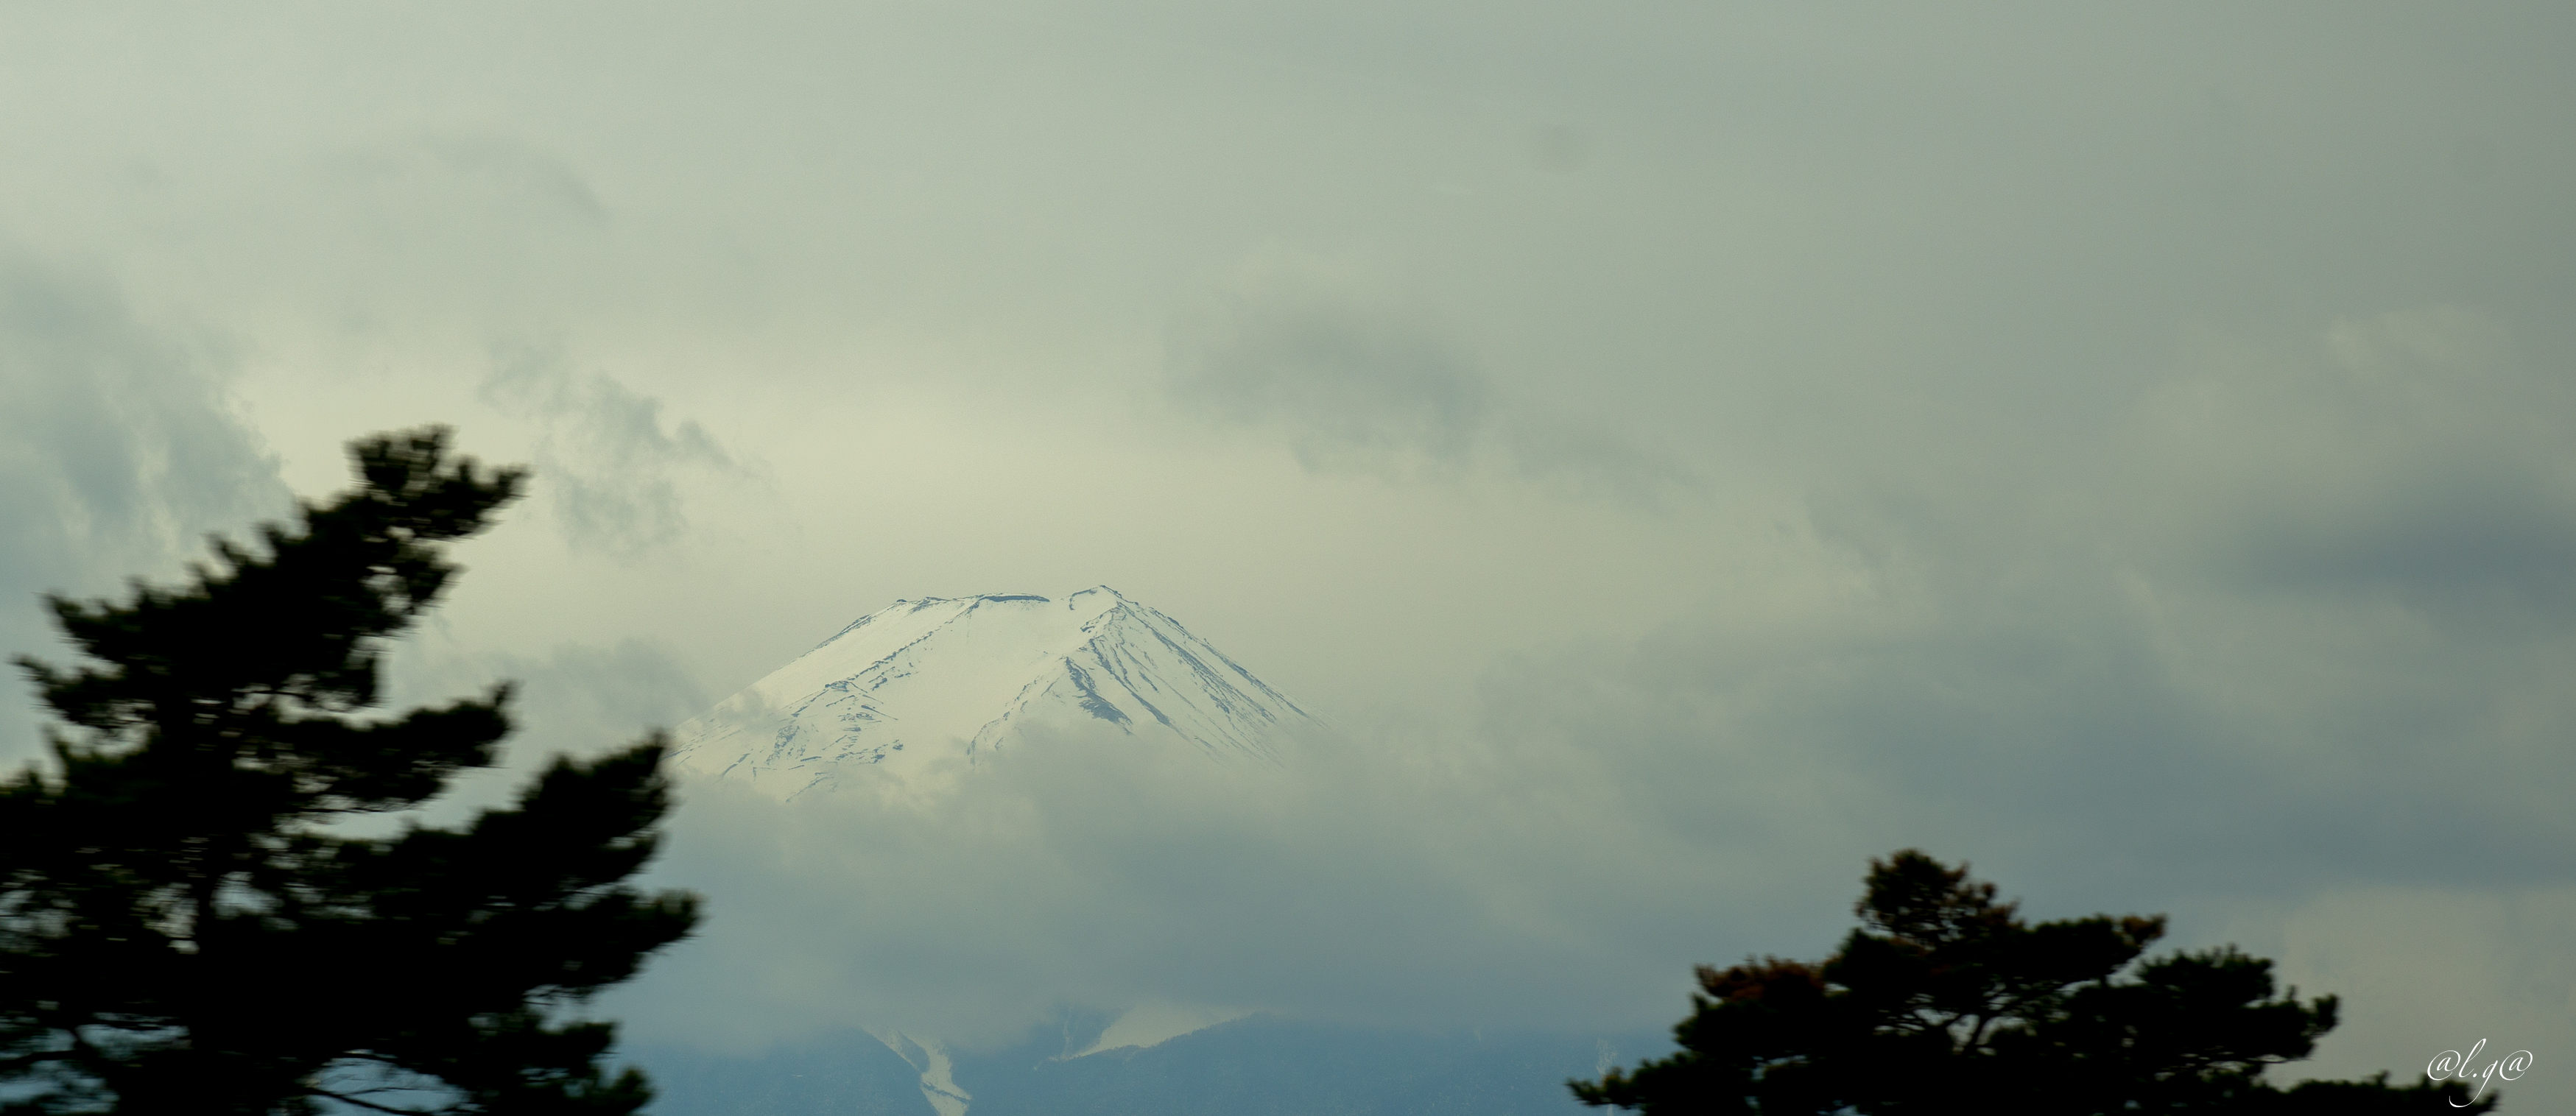 Le Mont Fuji enneigé